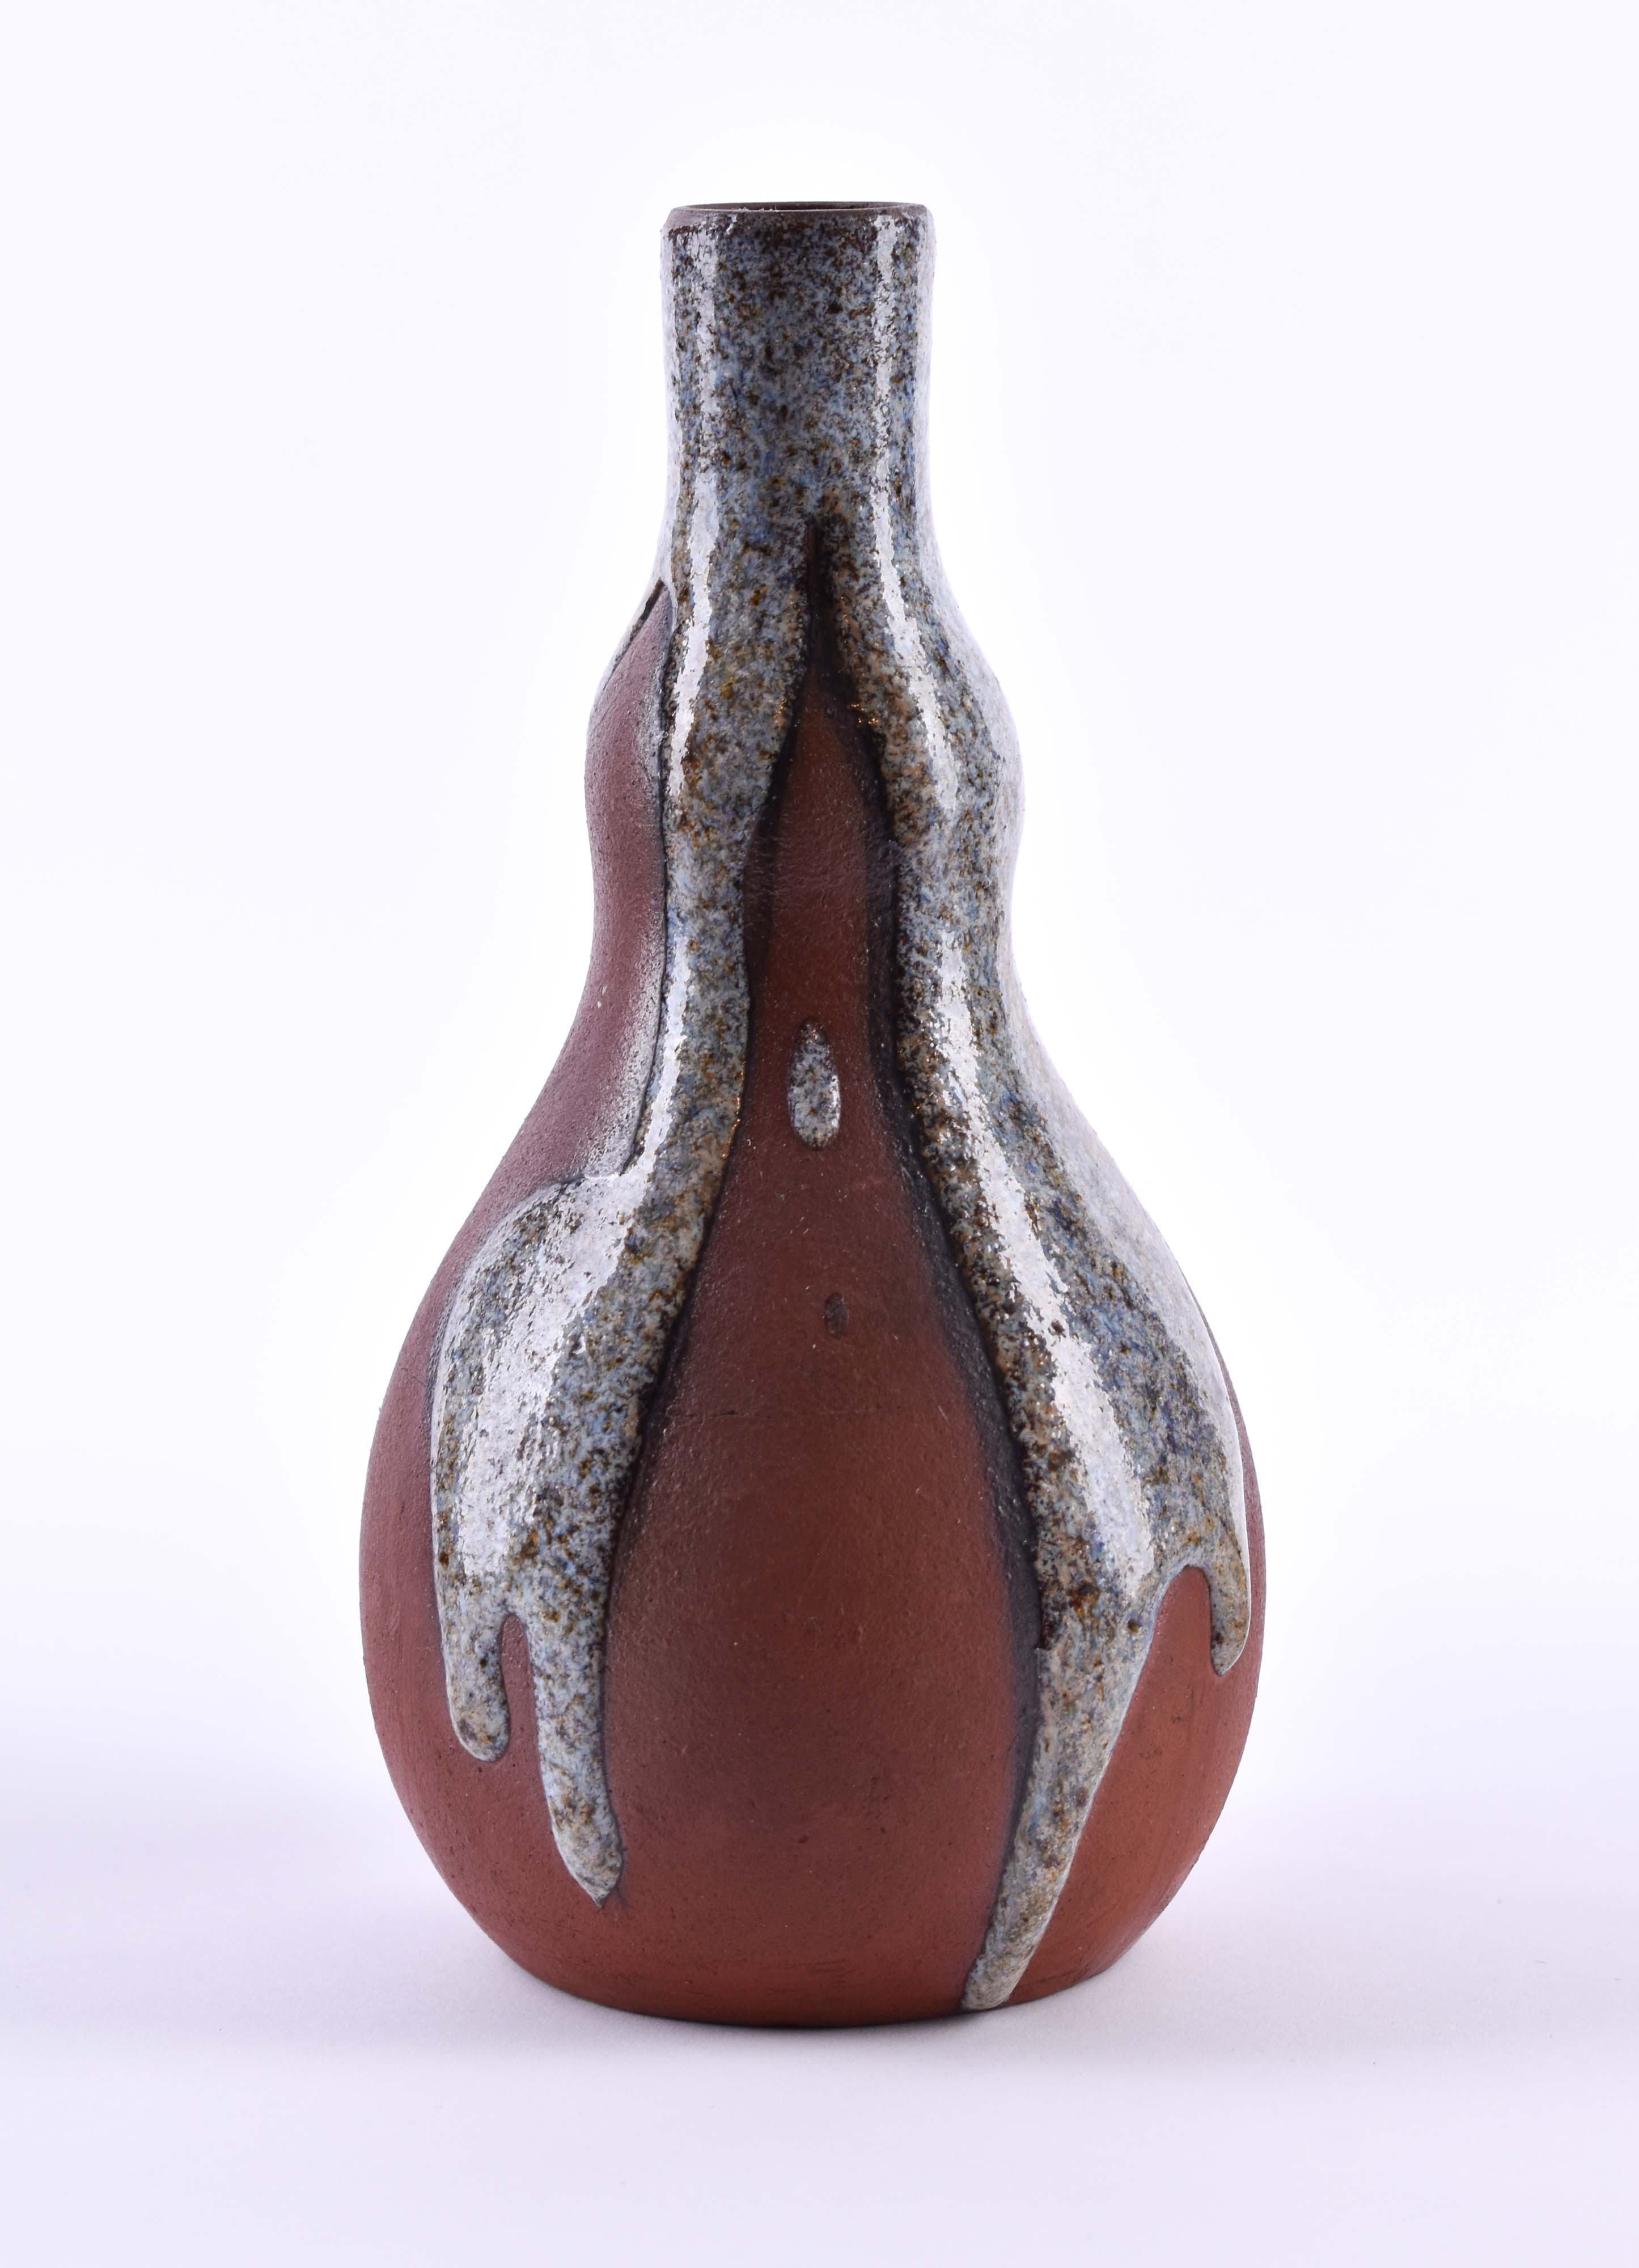  Vase China Qing dynasty - Image 5 of 12